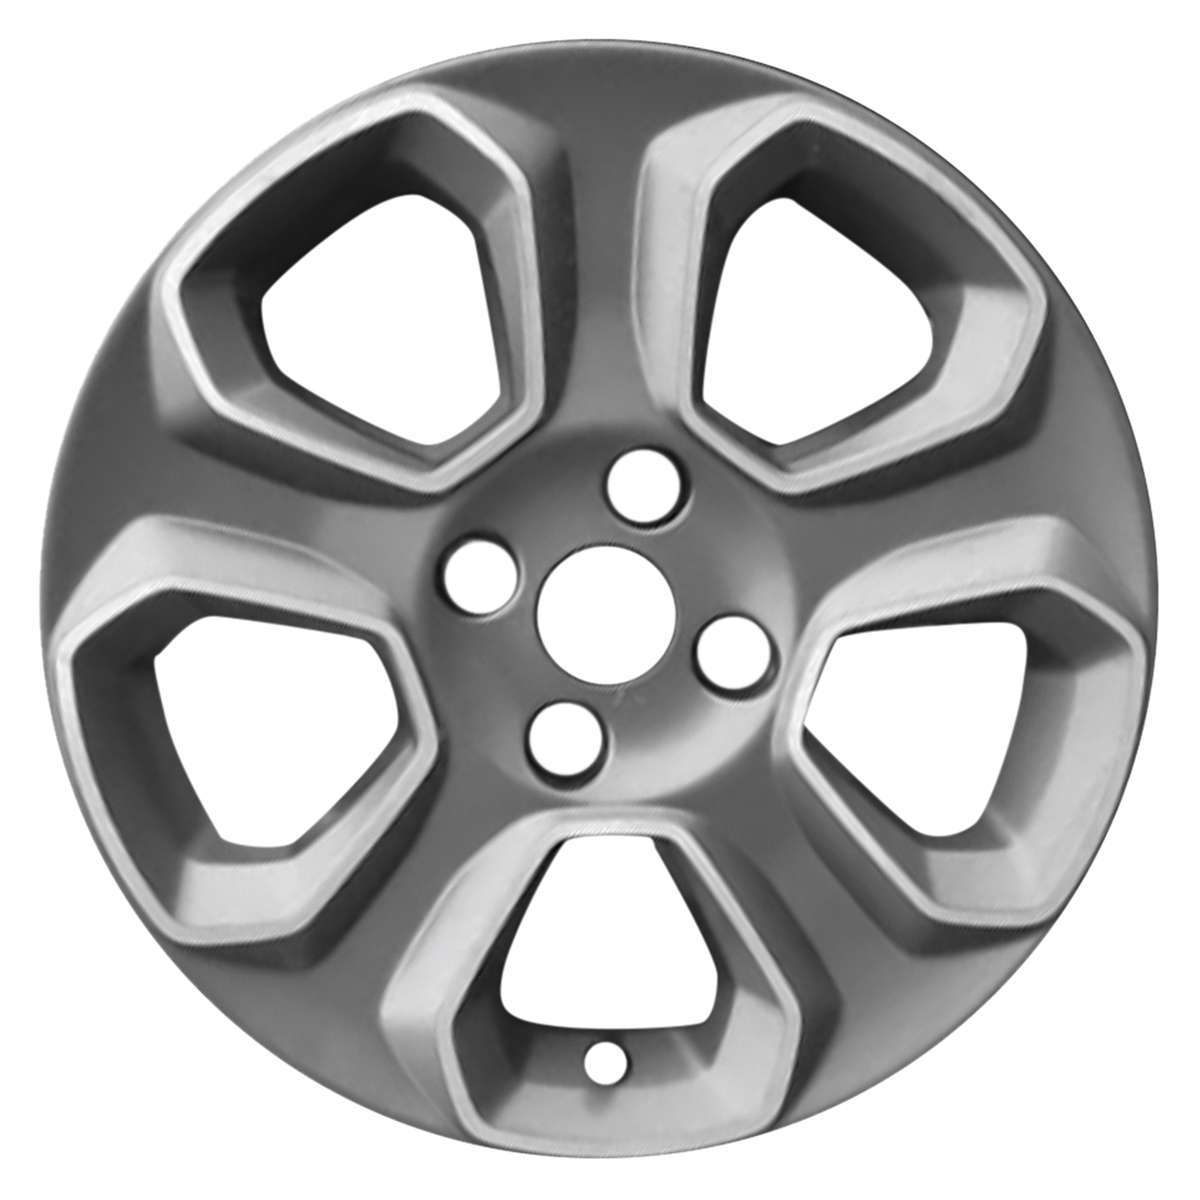 2018 Ford Ecosport 16" OEM Wheel Rim W10148C